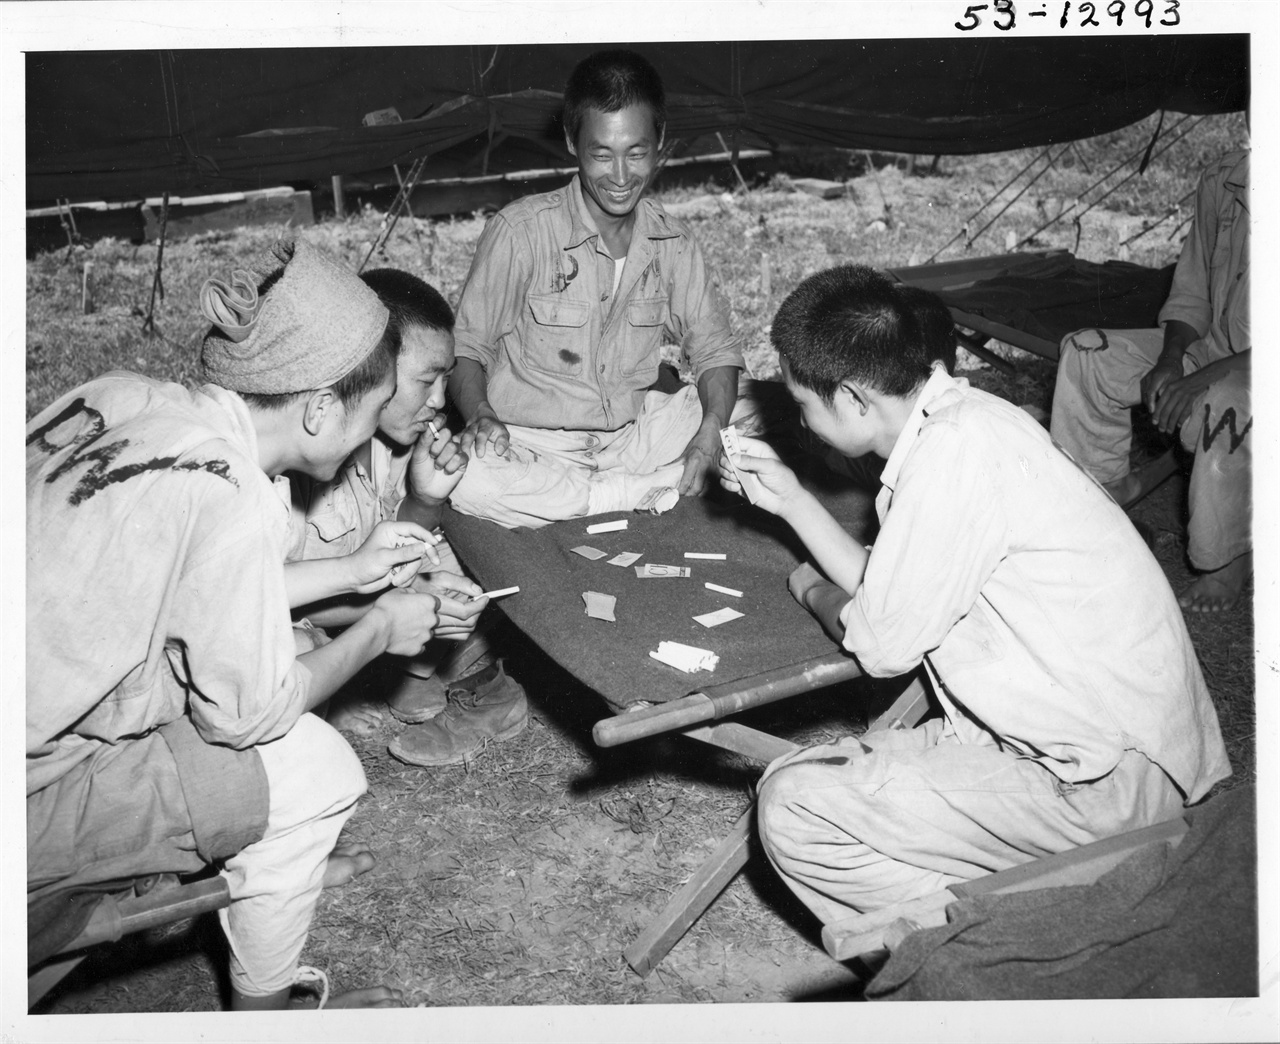 1950. 8. 28. 임시 포로수용소 막사에서 포로들이 담배껍질로 만든 카드로 담배내기 게임을 하고 있다.